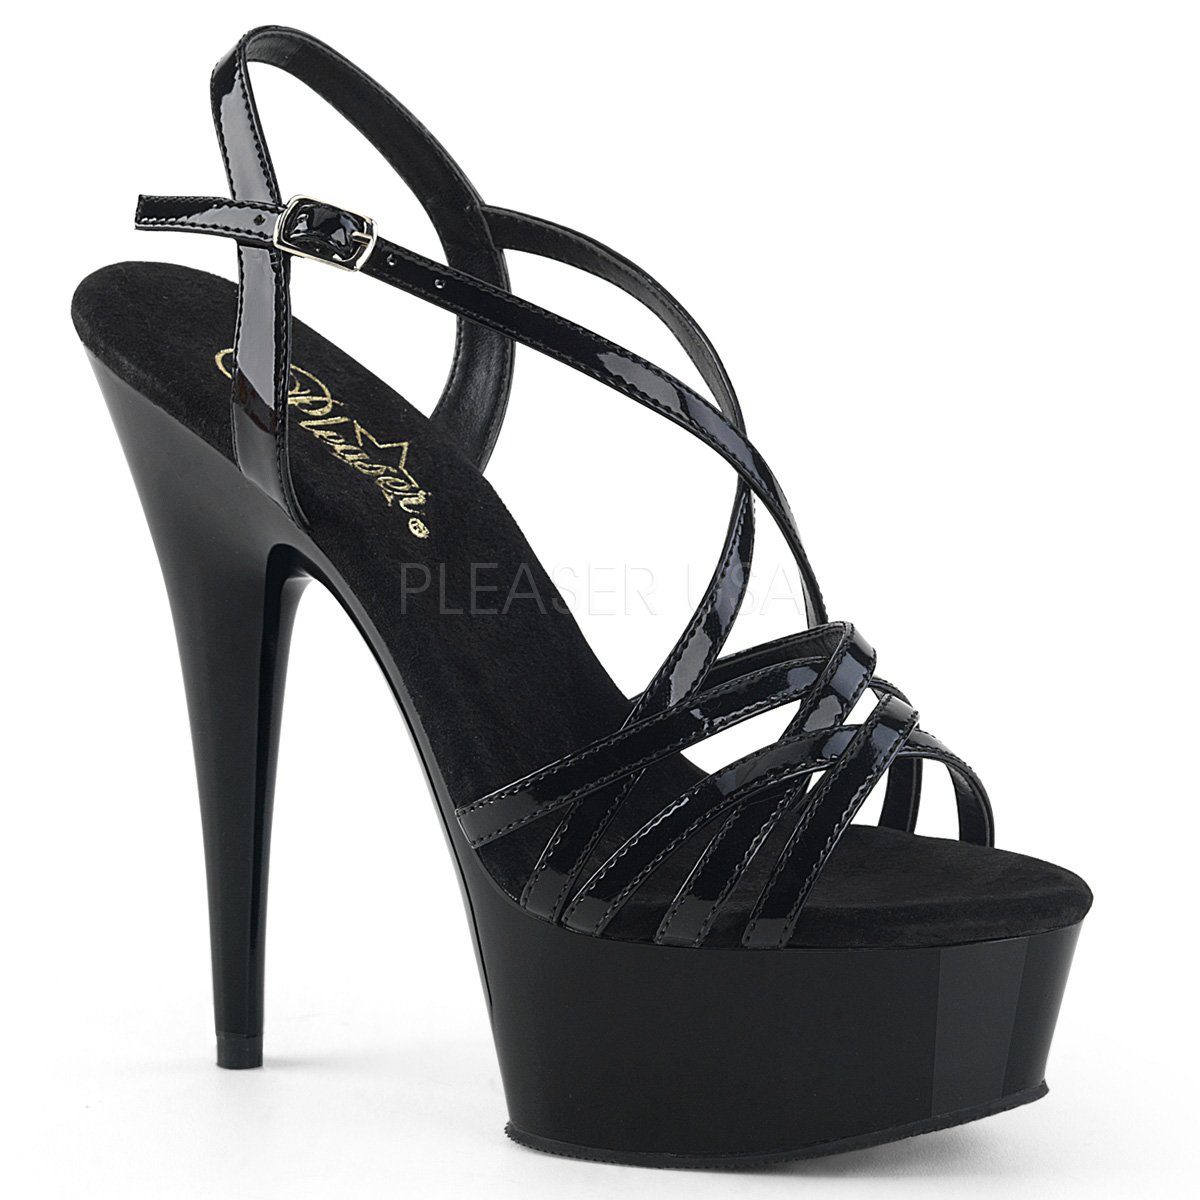 Günstige High Heels für Damen kaufen » Hohe Schuhe SALE | OTTO